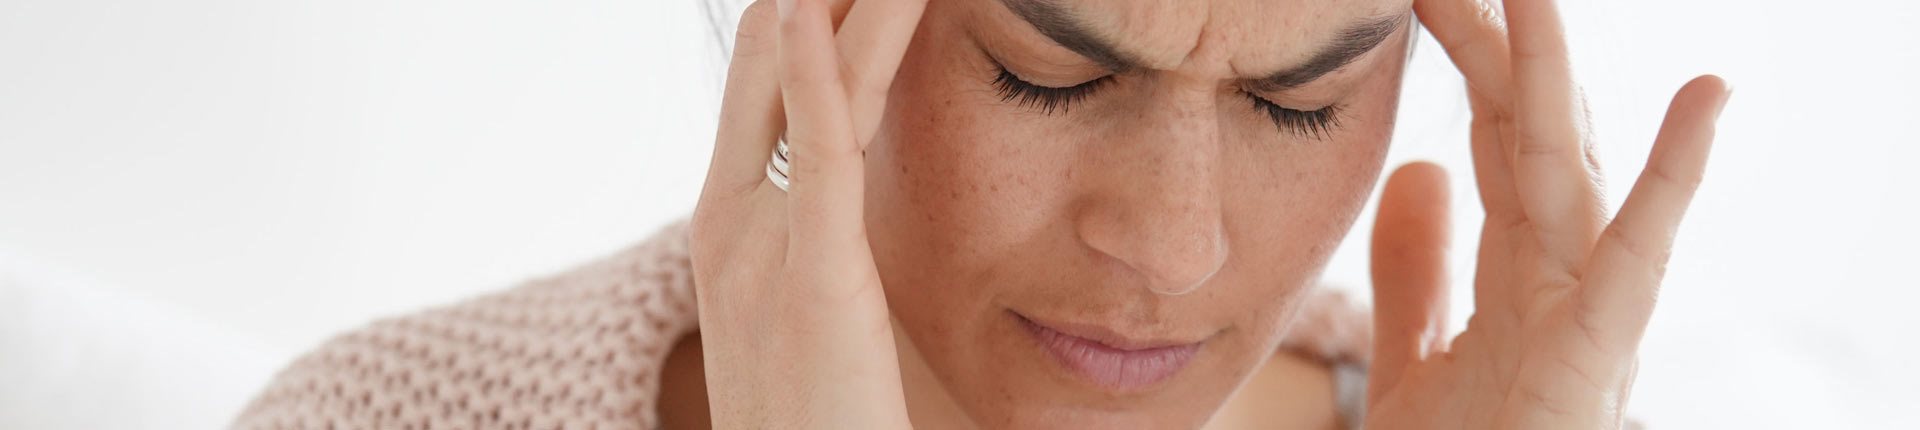 Mity dotyczące migreny - co warto wiedzieć o migrenie?